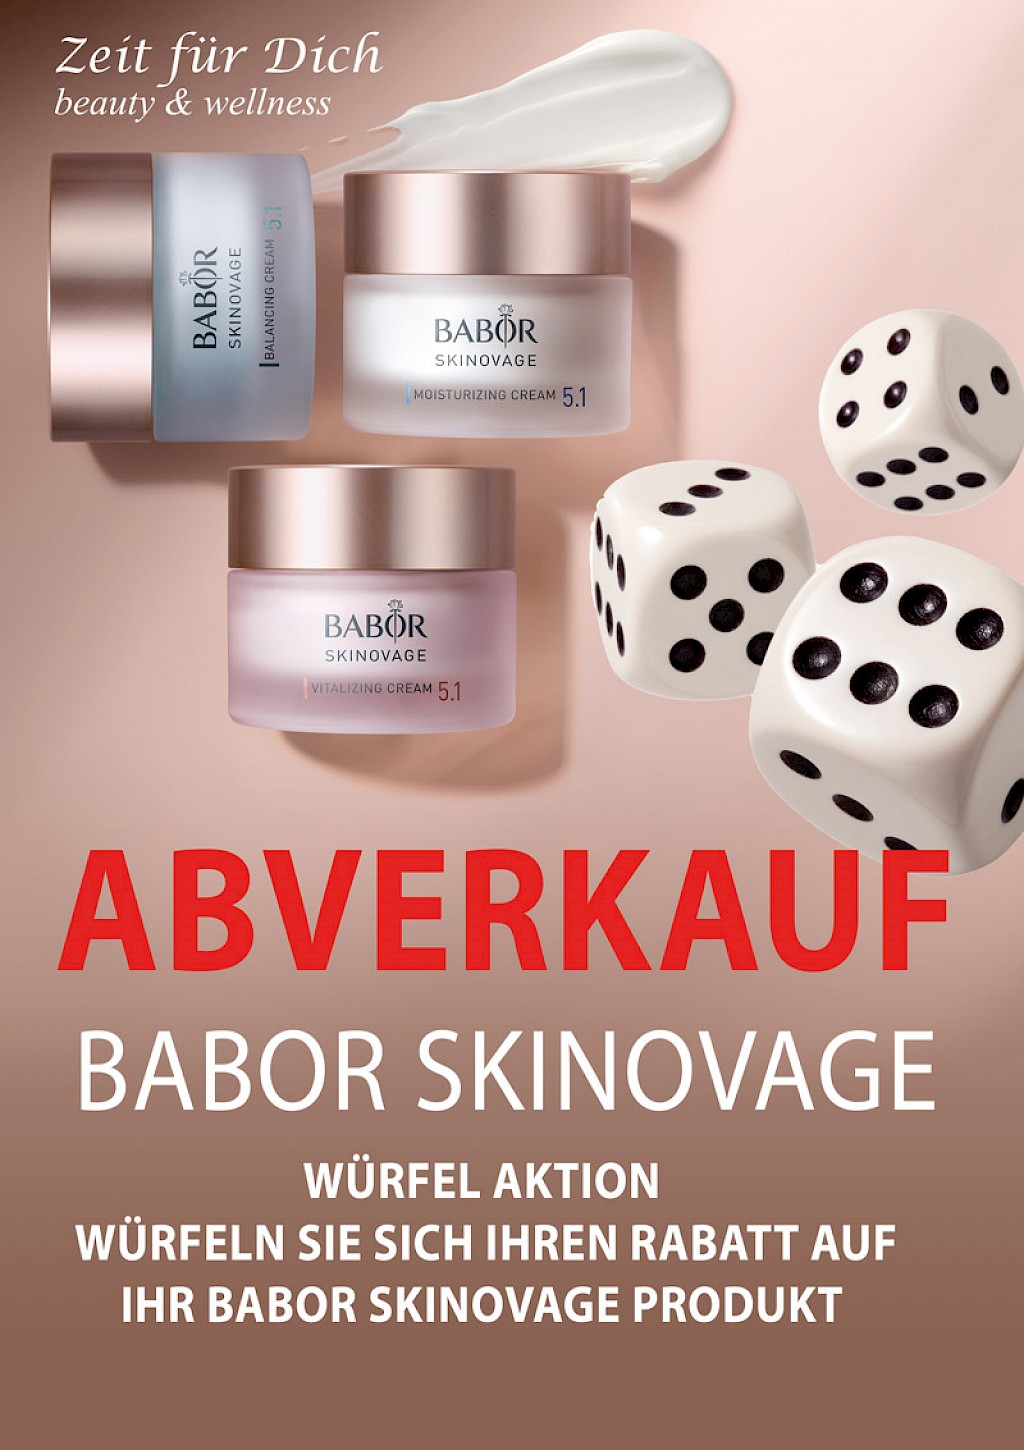 Abverkauf babor Skinovage Würfel Aktion  würfeln Sie sich ihren Rabatt auf Ihr Babor Skinovage Produkt